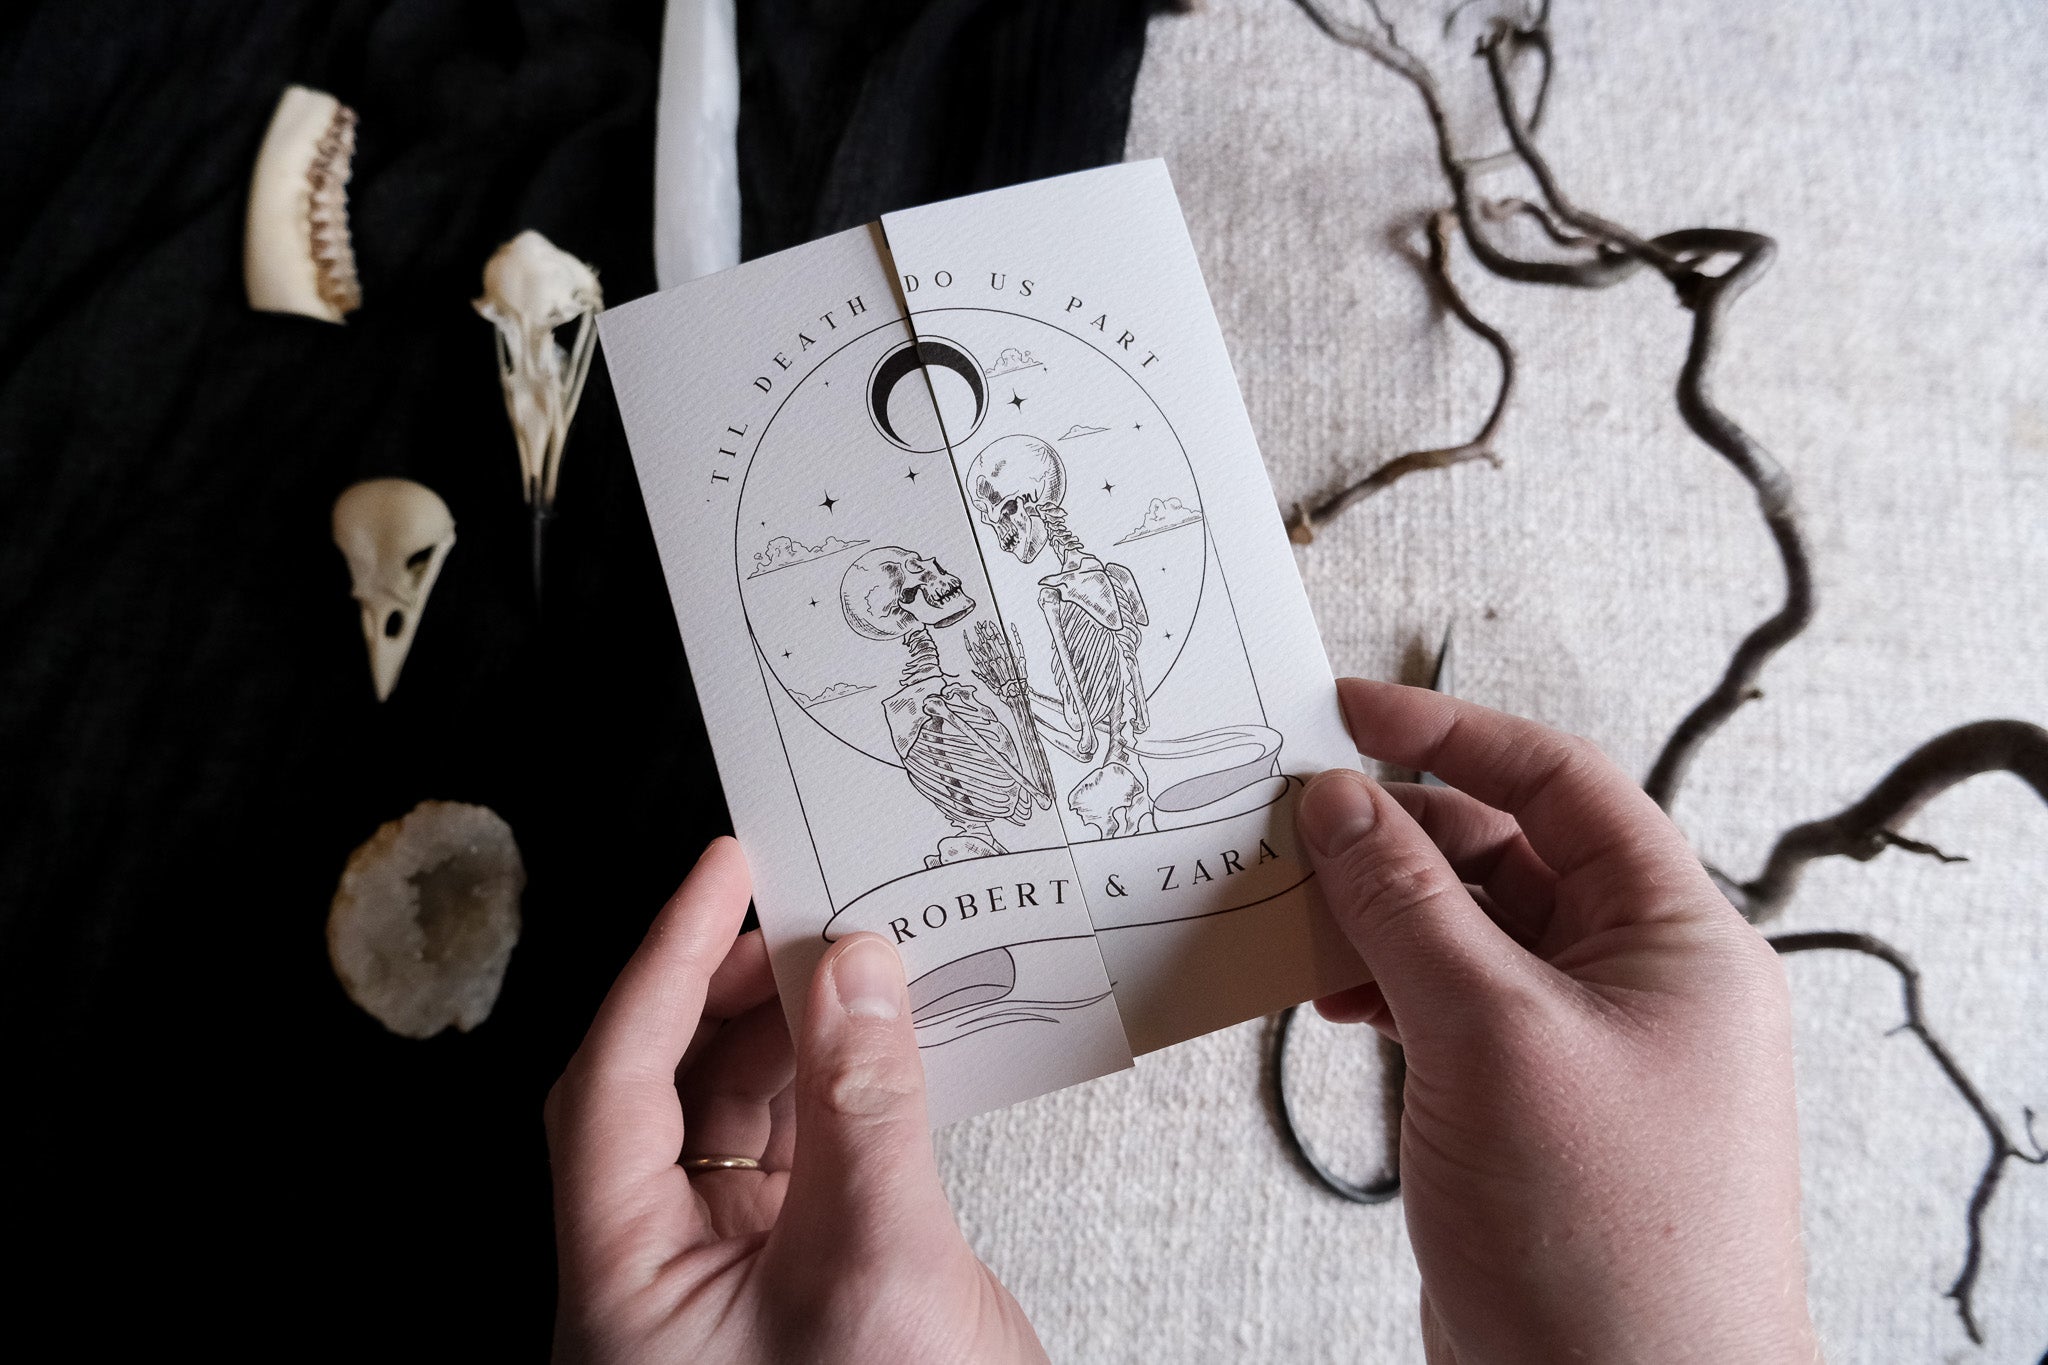 Skeleton Lovers & Bleeding Heart 'Til Death Do Us Part' Gatefold Wedding Invitation